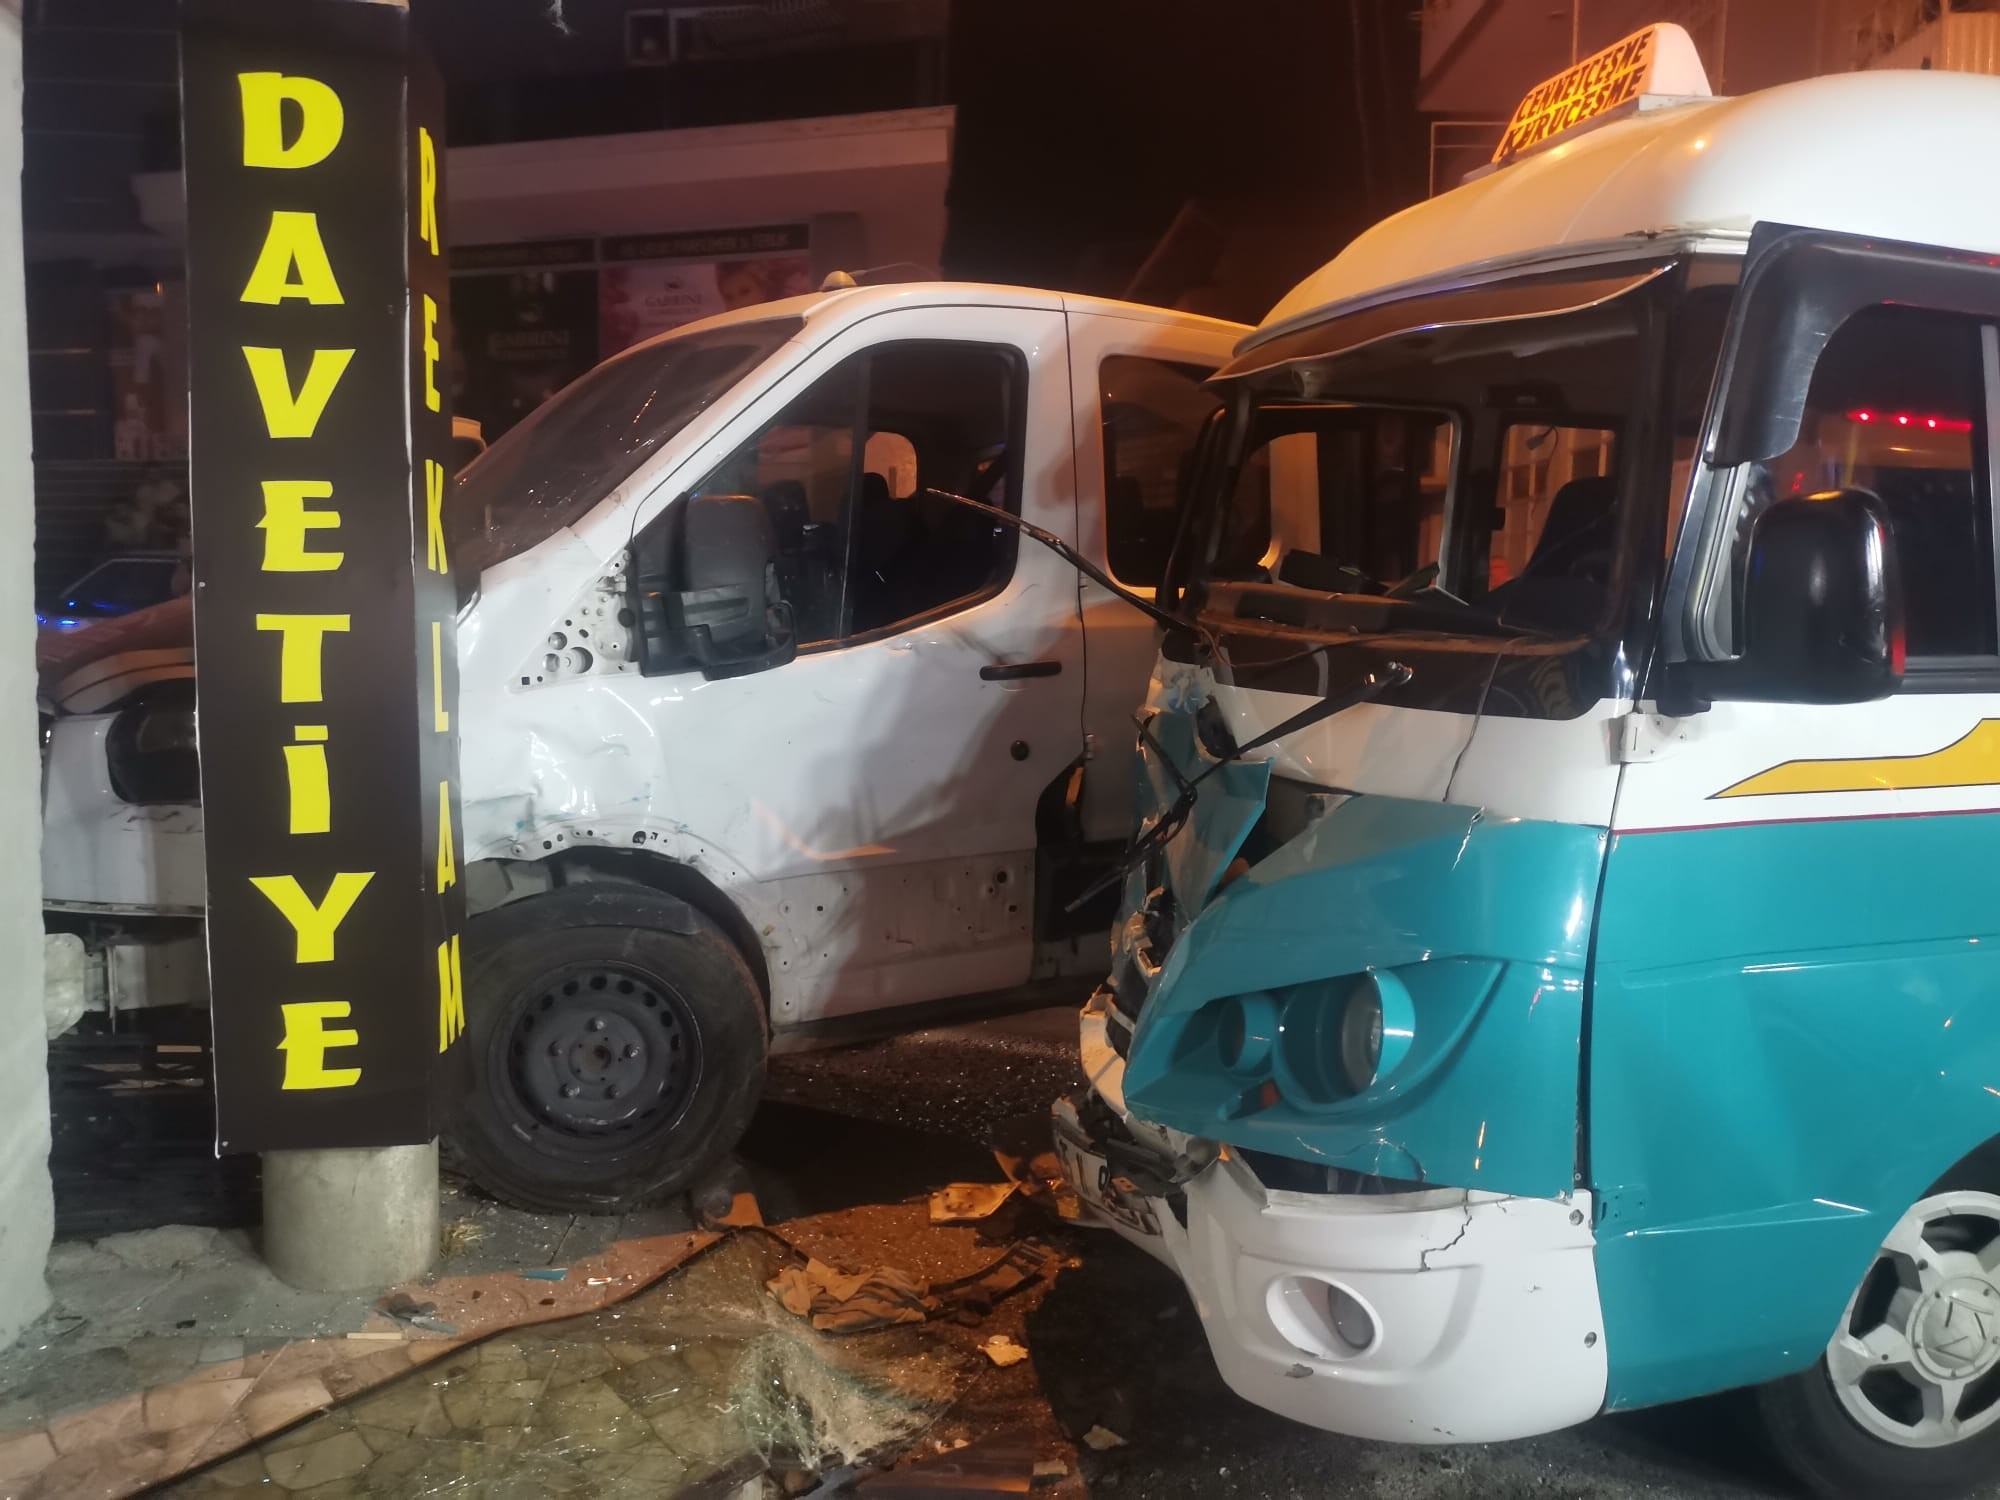 İzmir’in Buca ilçesinde yolcu dolmuşu ile kamyonetin karıştığı kazada 12 kişi yaralandı. Hastanelere kaldırılan yaralılar tedavi altına alındı.
